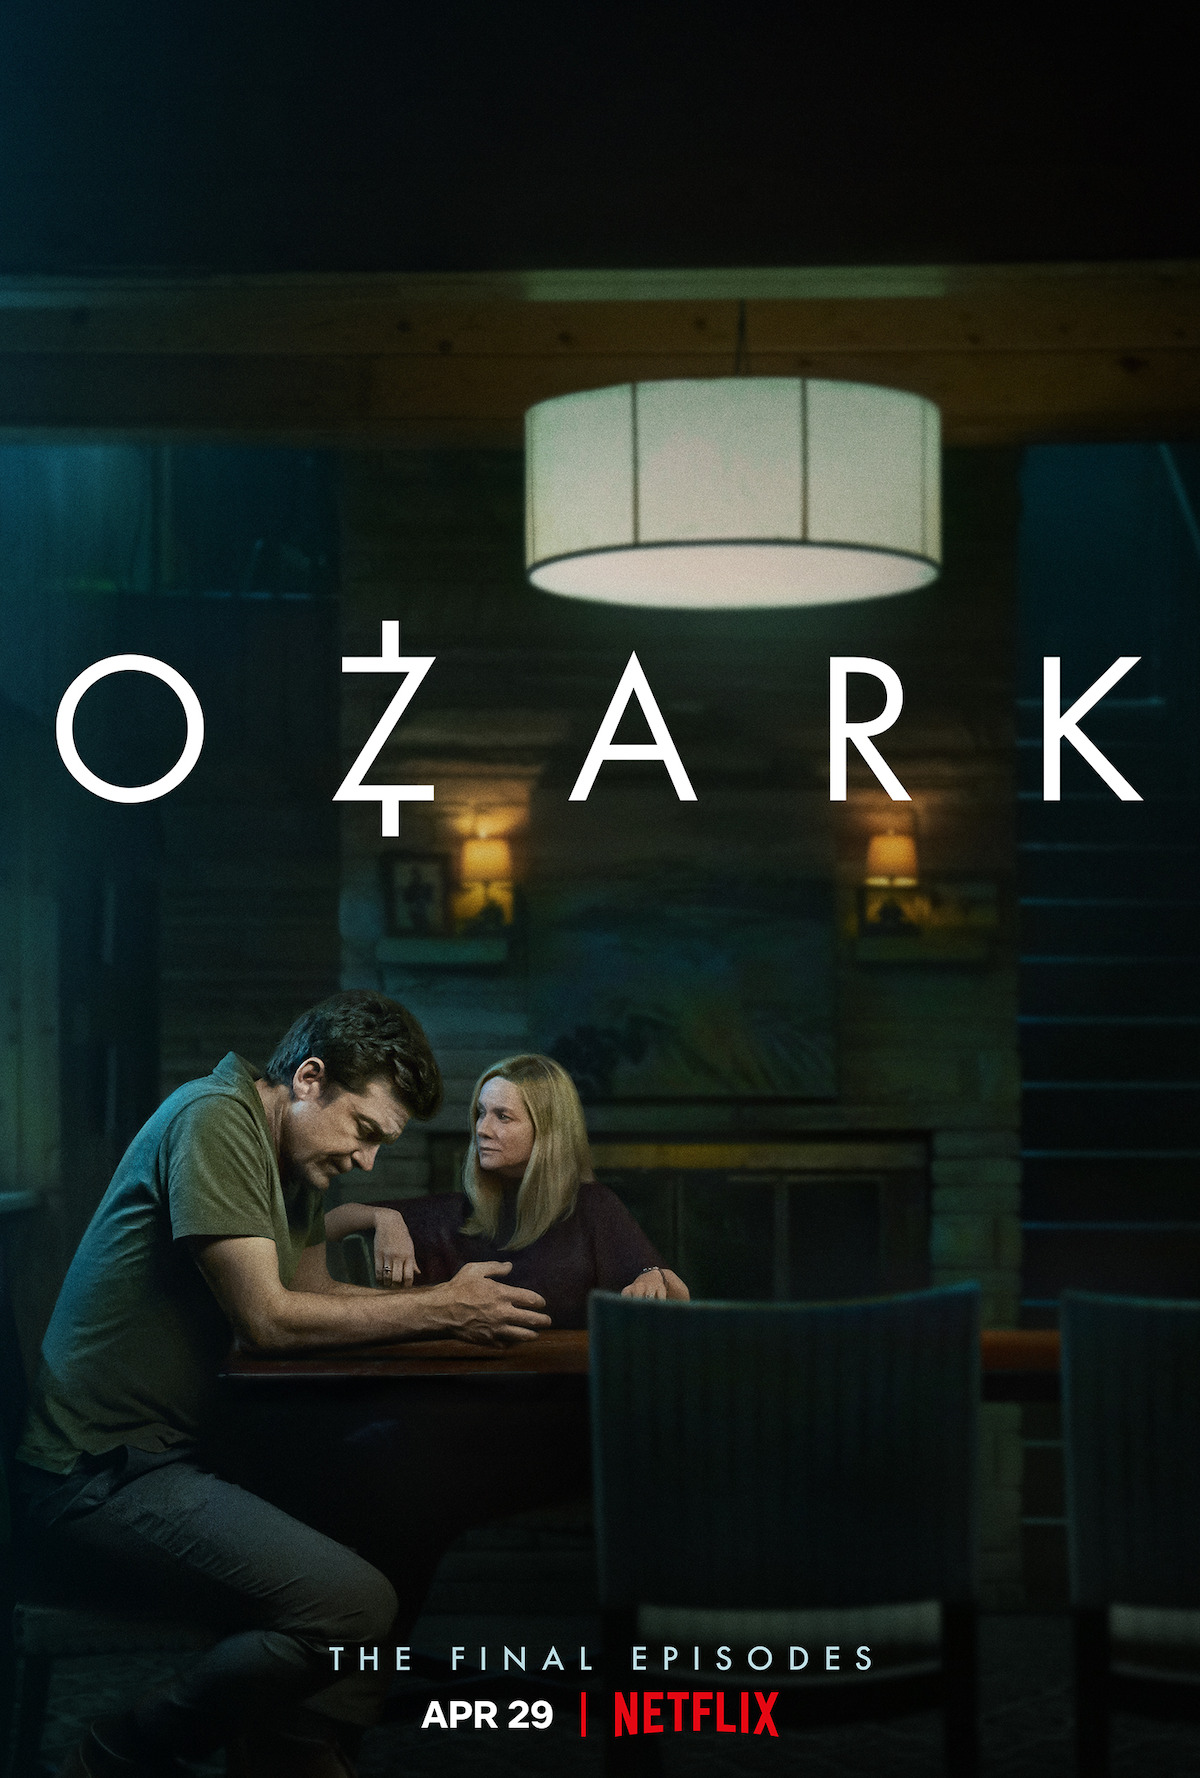 Ozark' Season 4 Part 2 Premiere Date Set: Watch Teaser for Final